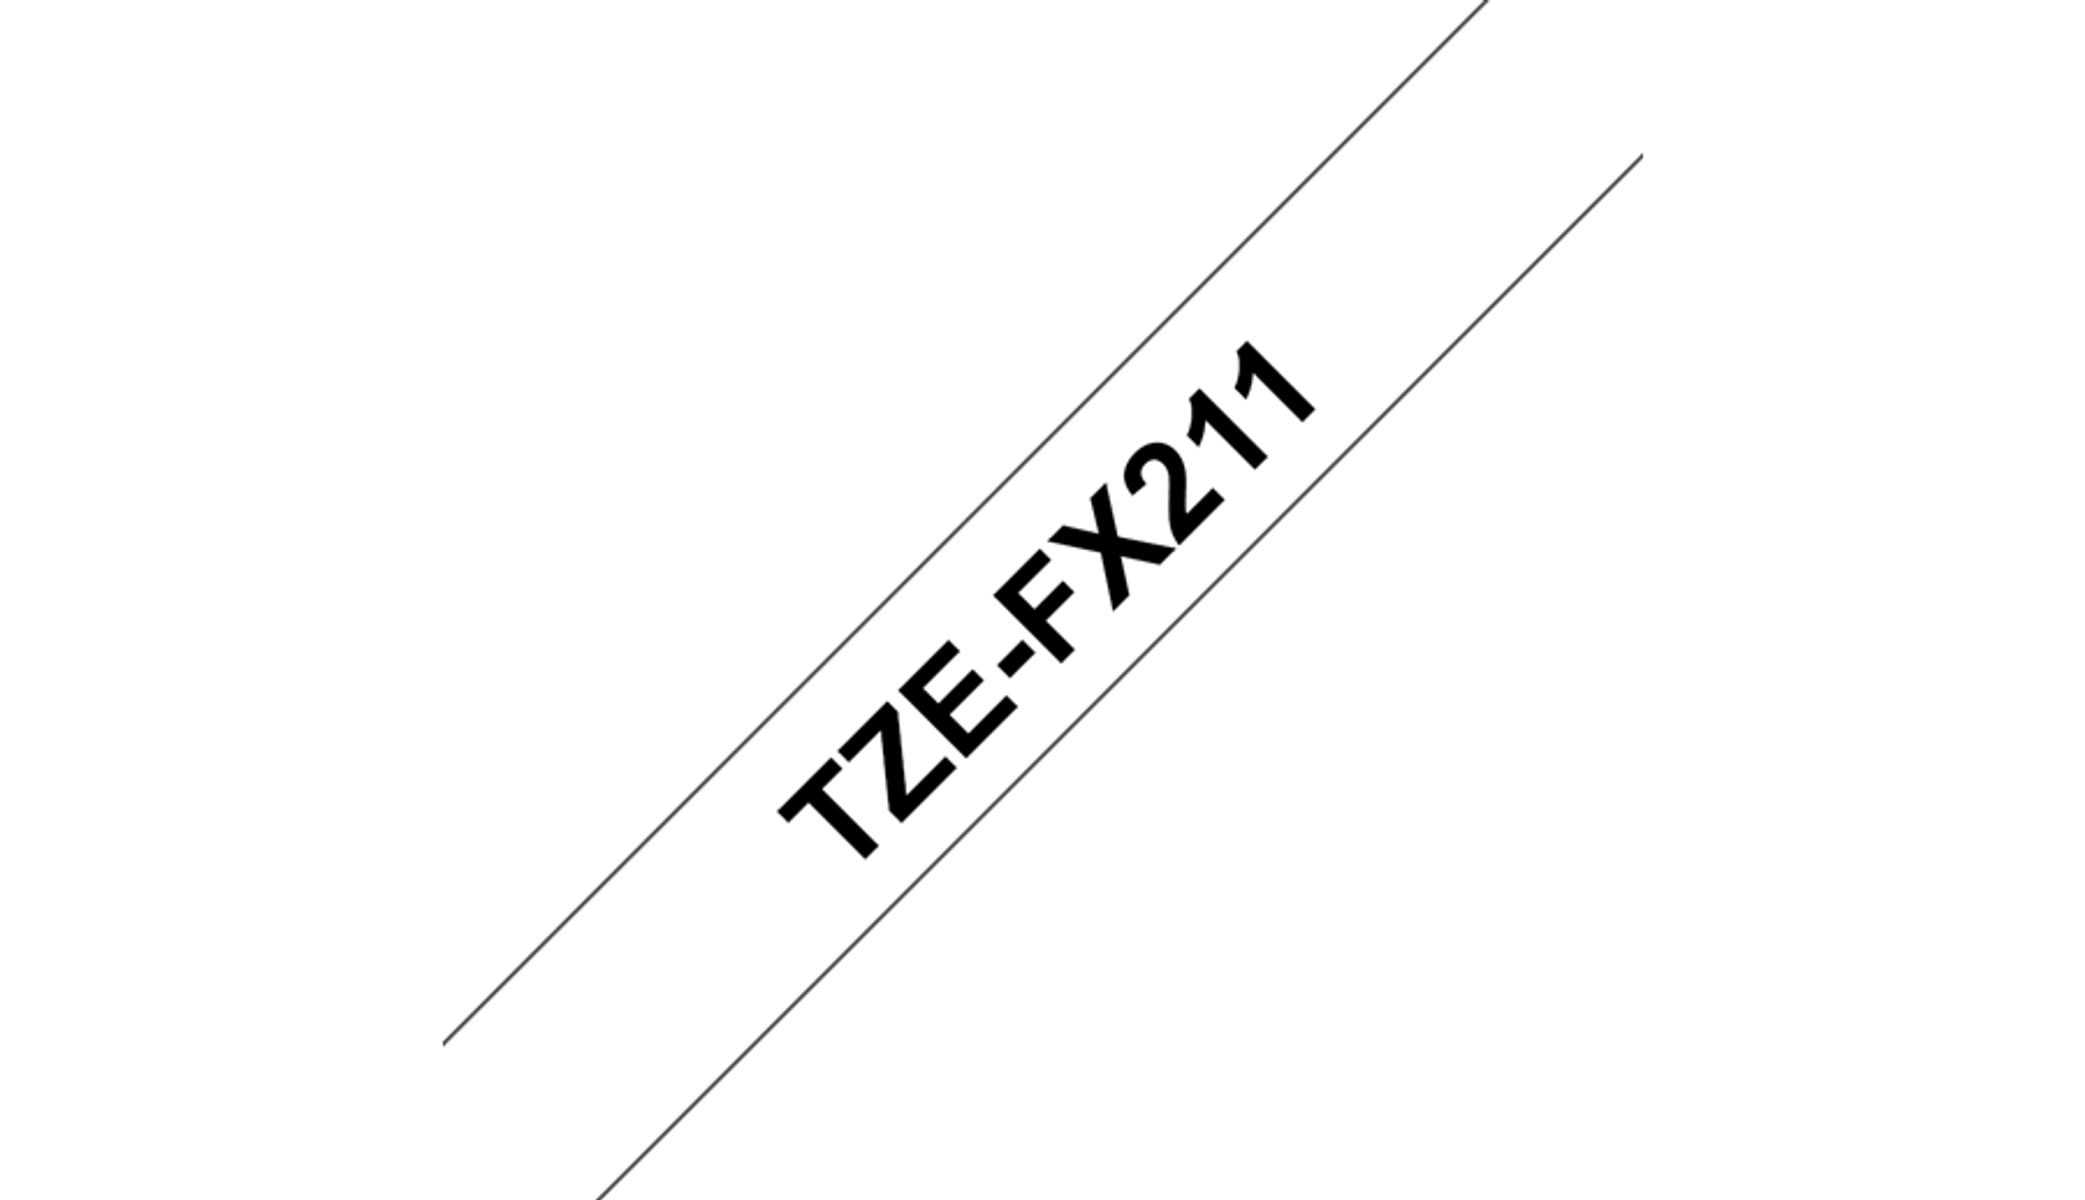 schwarz (TZE-FX211) Farbband Original weiß Brother verfügbar P-Touch BROTHER auf Schriftband Nicht